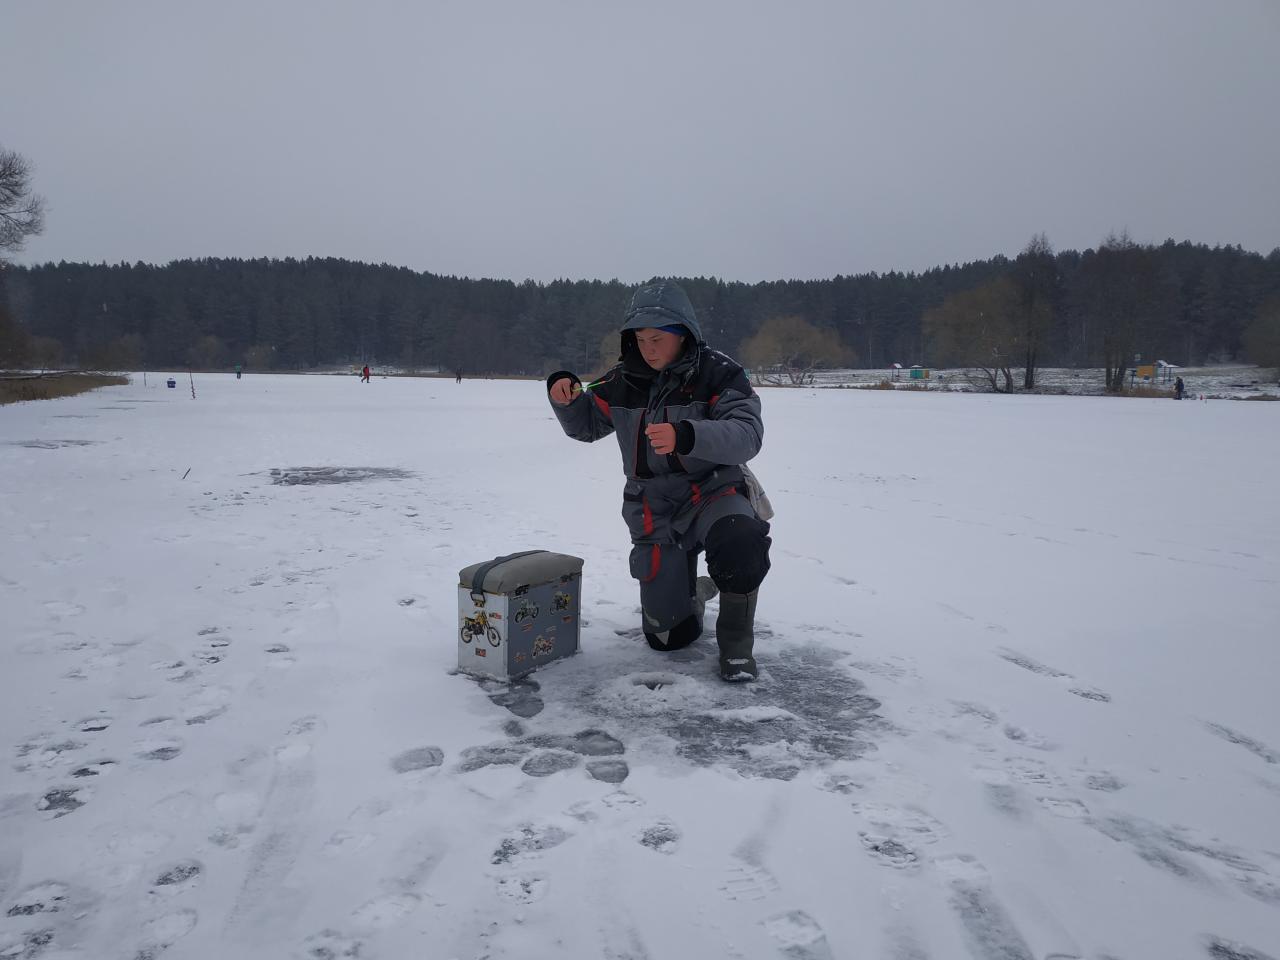  Сегодня с тренером Юрой и юниорами были на ... | Отчеты о рыбалке в Беларуси